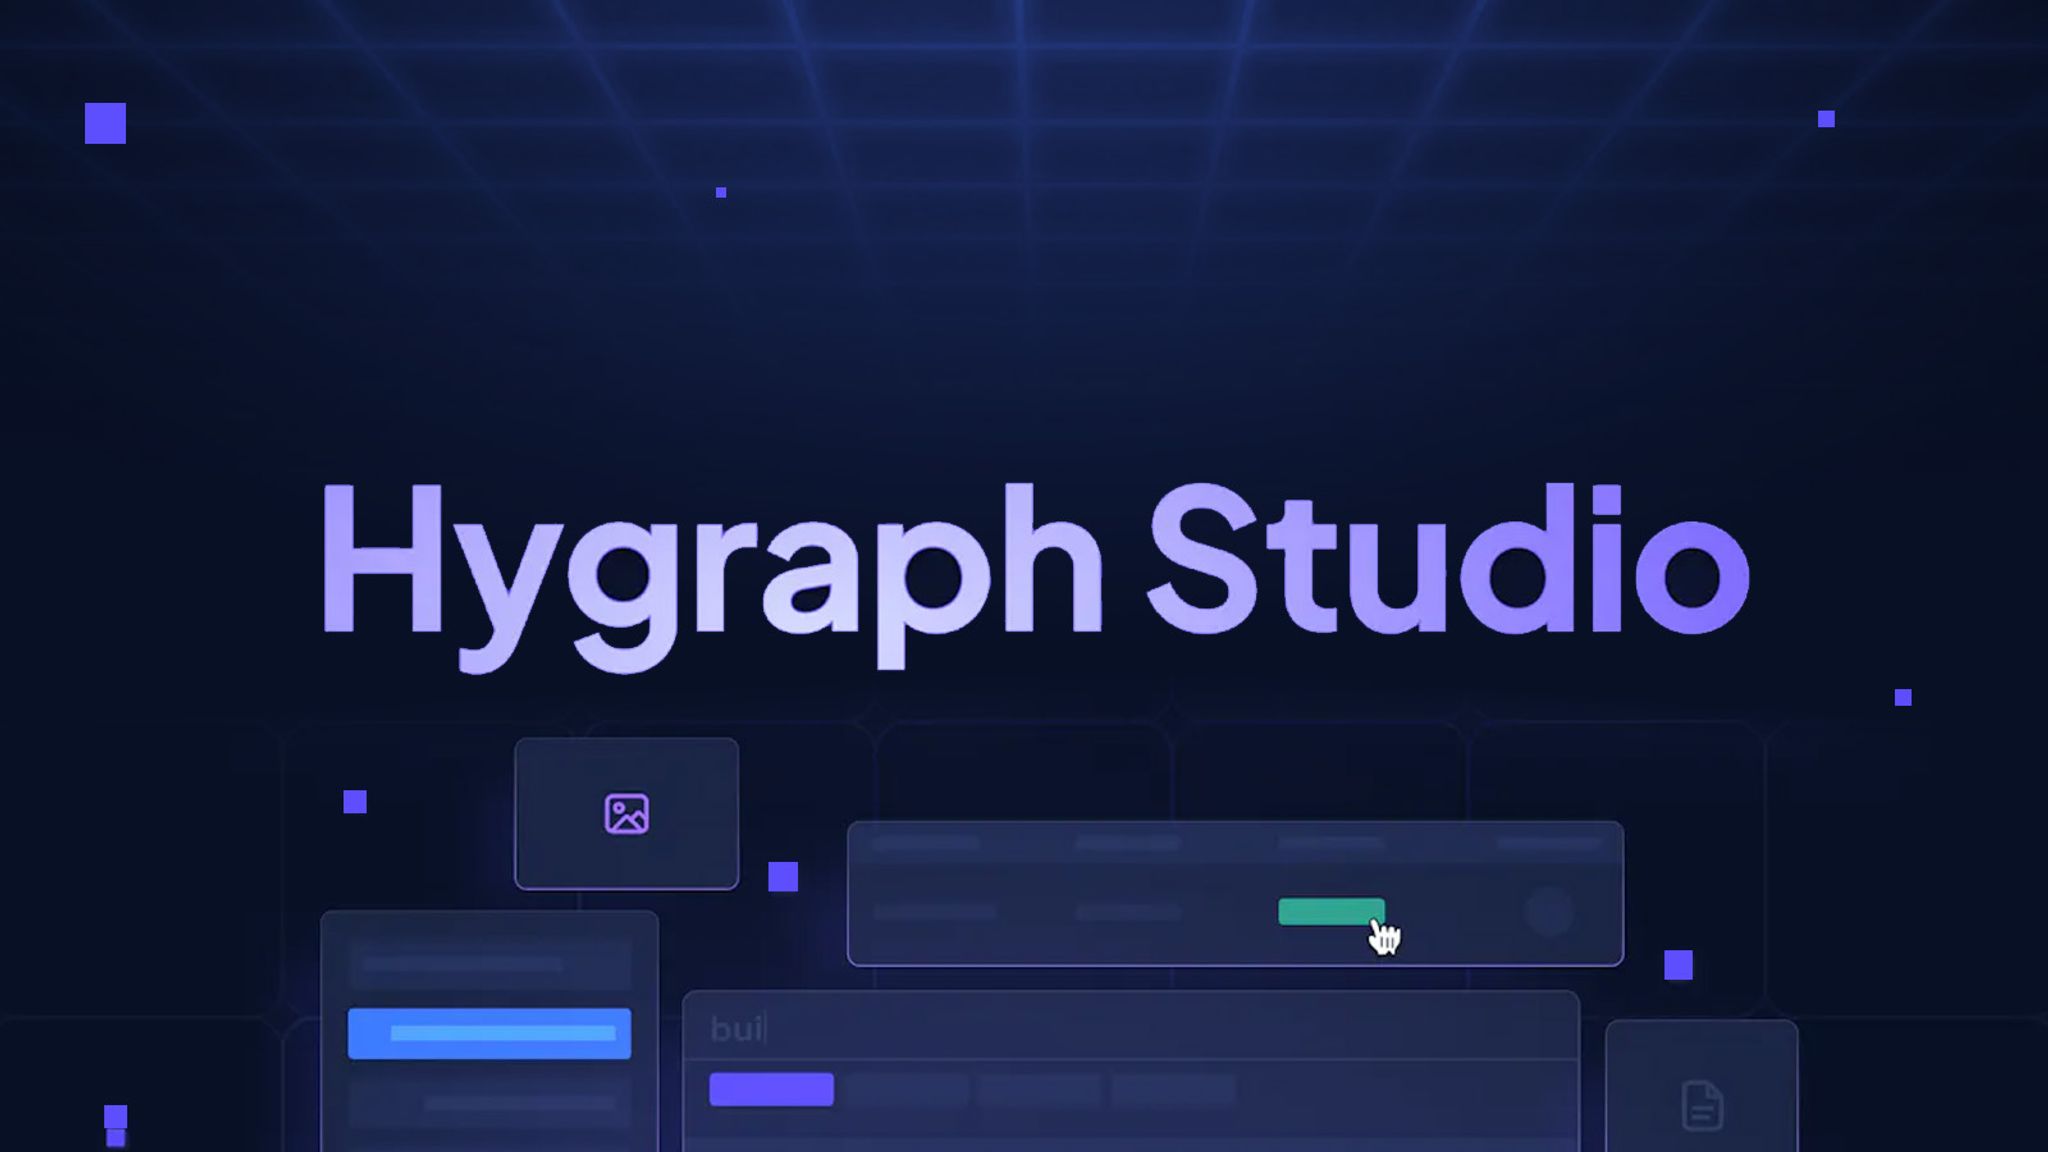 Hygraph Studio